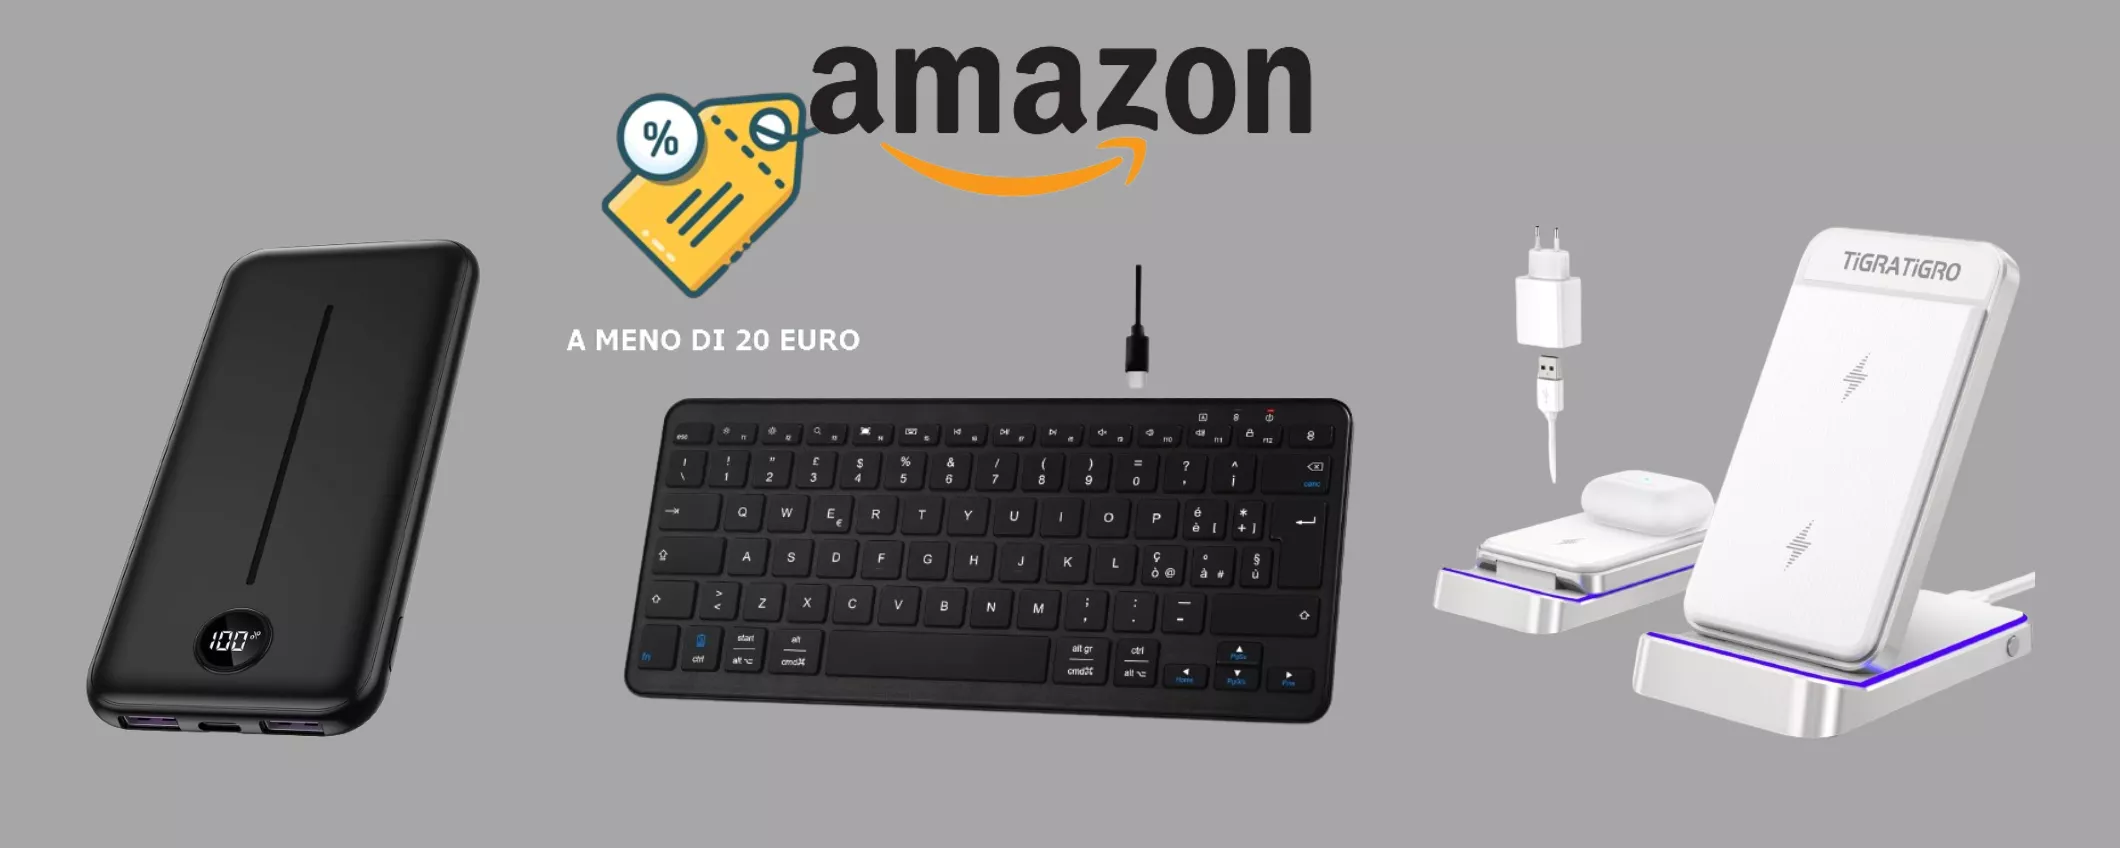 Gadget tech IN SVENDITA su Amazon: tutto a MENO DI 20 EURO